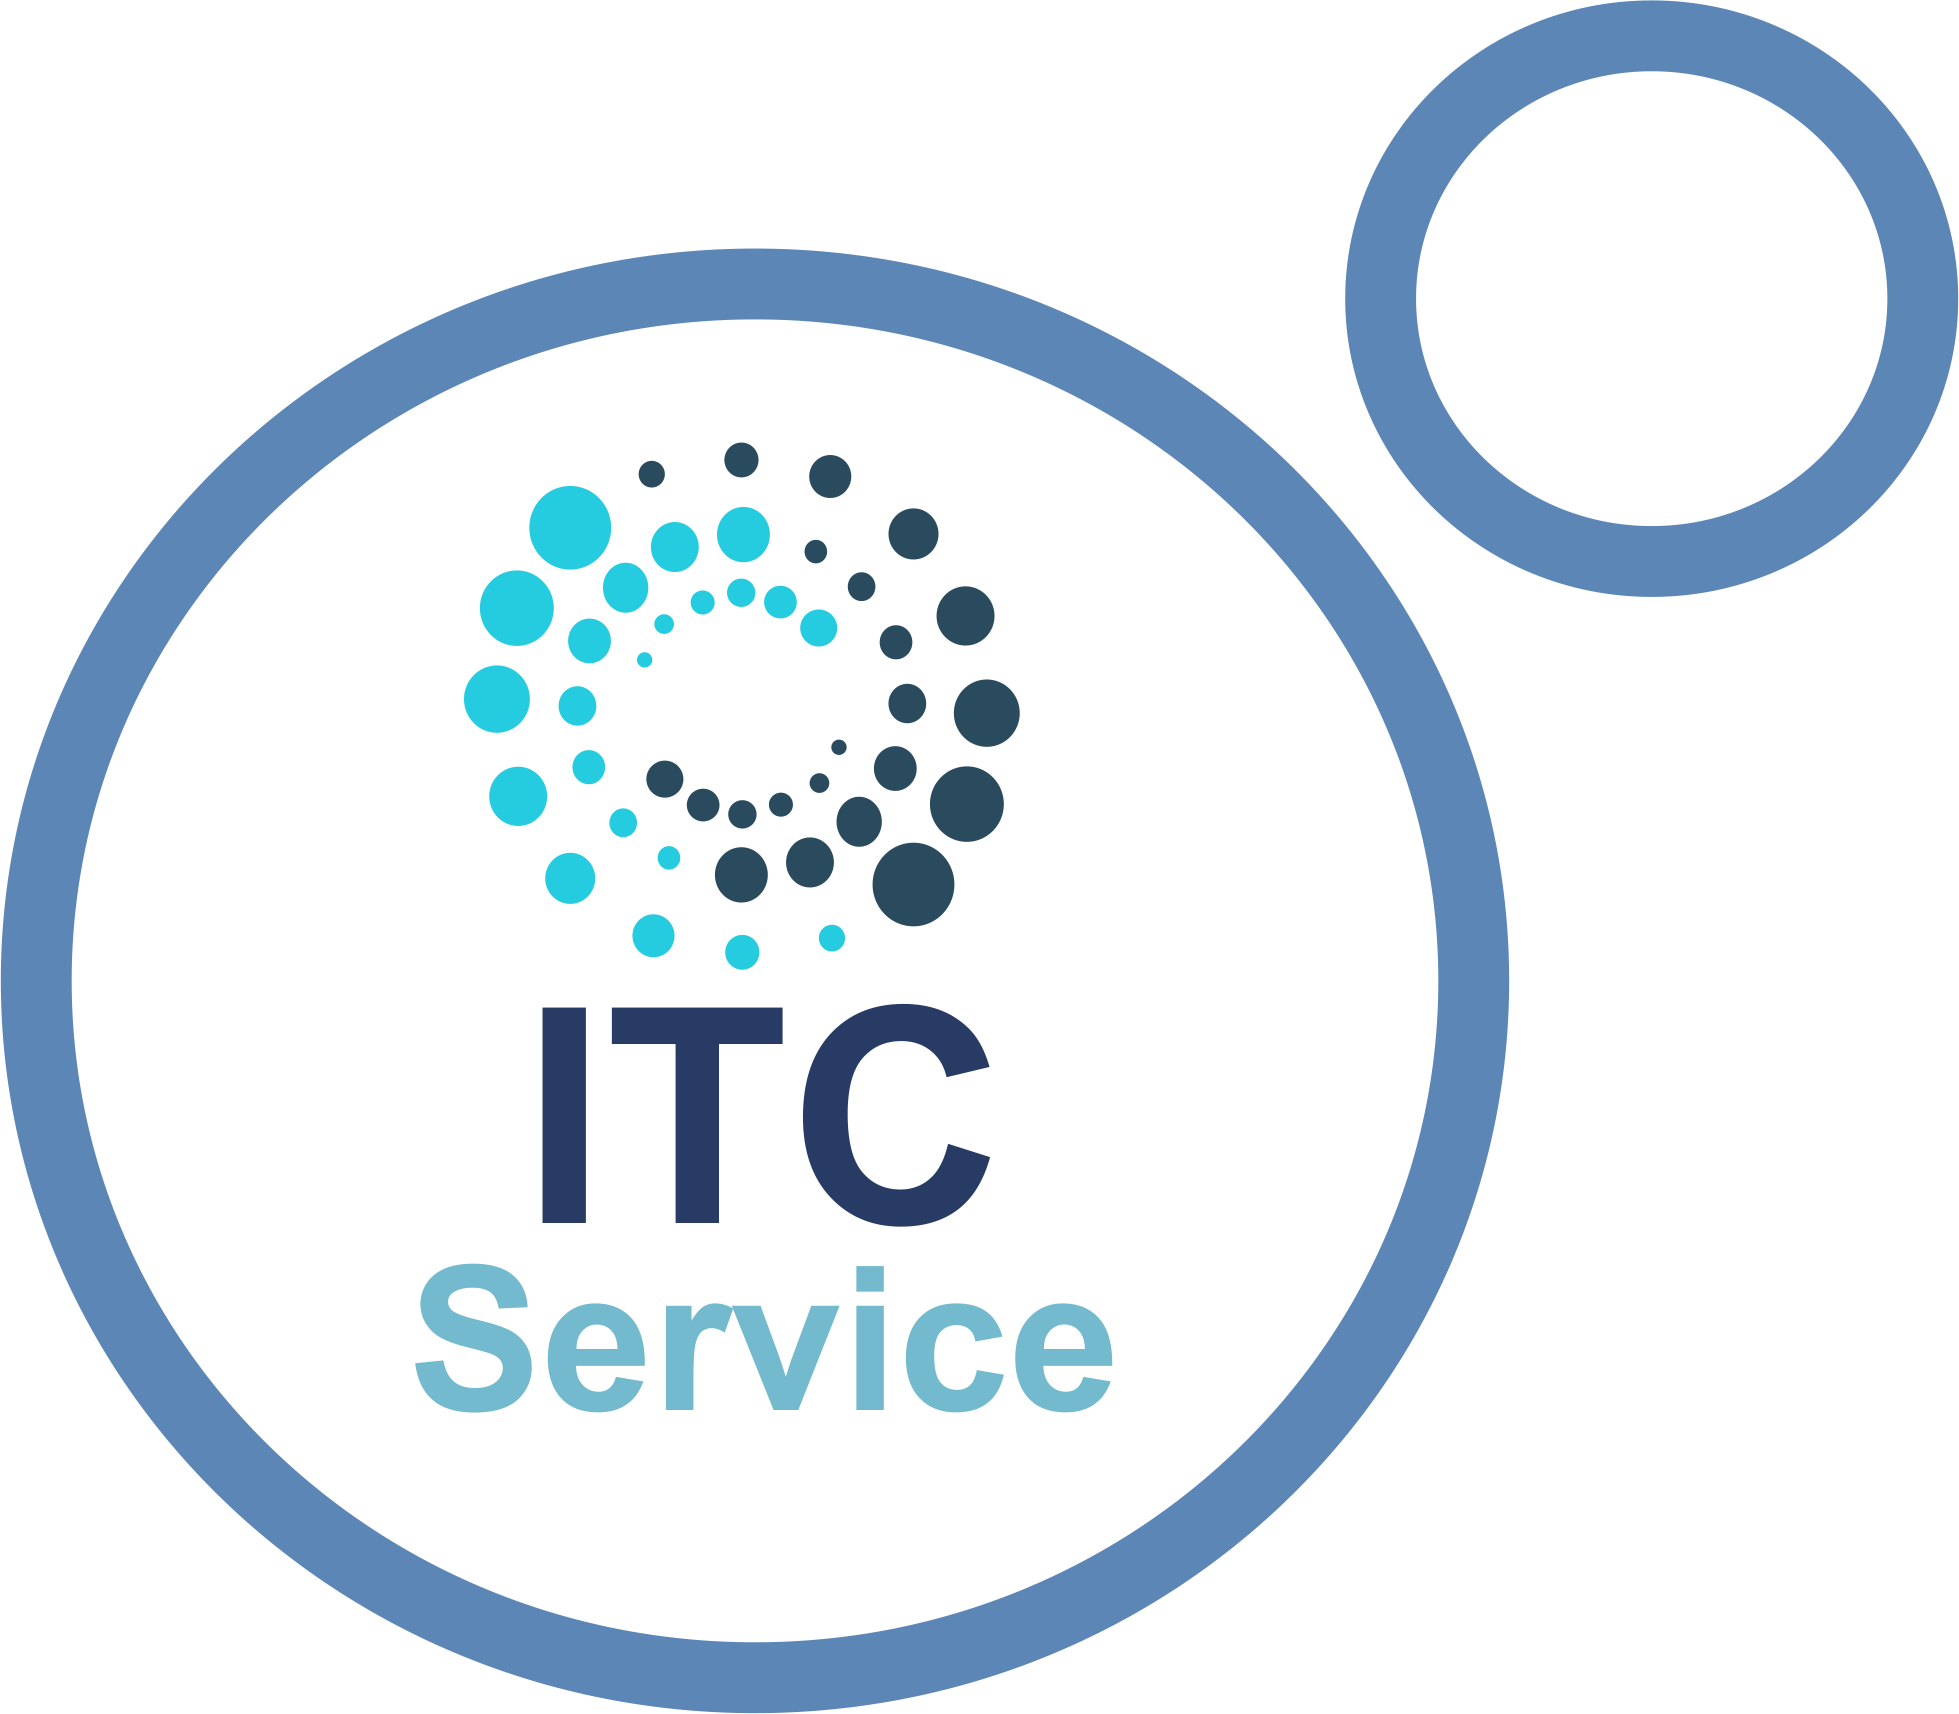 ITC Service - TI e Assistência Técnica em Informática